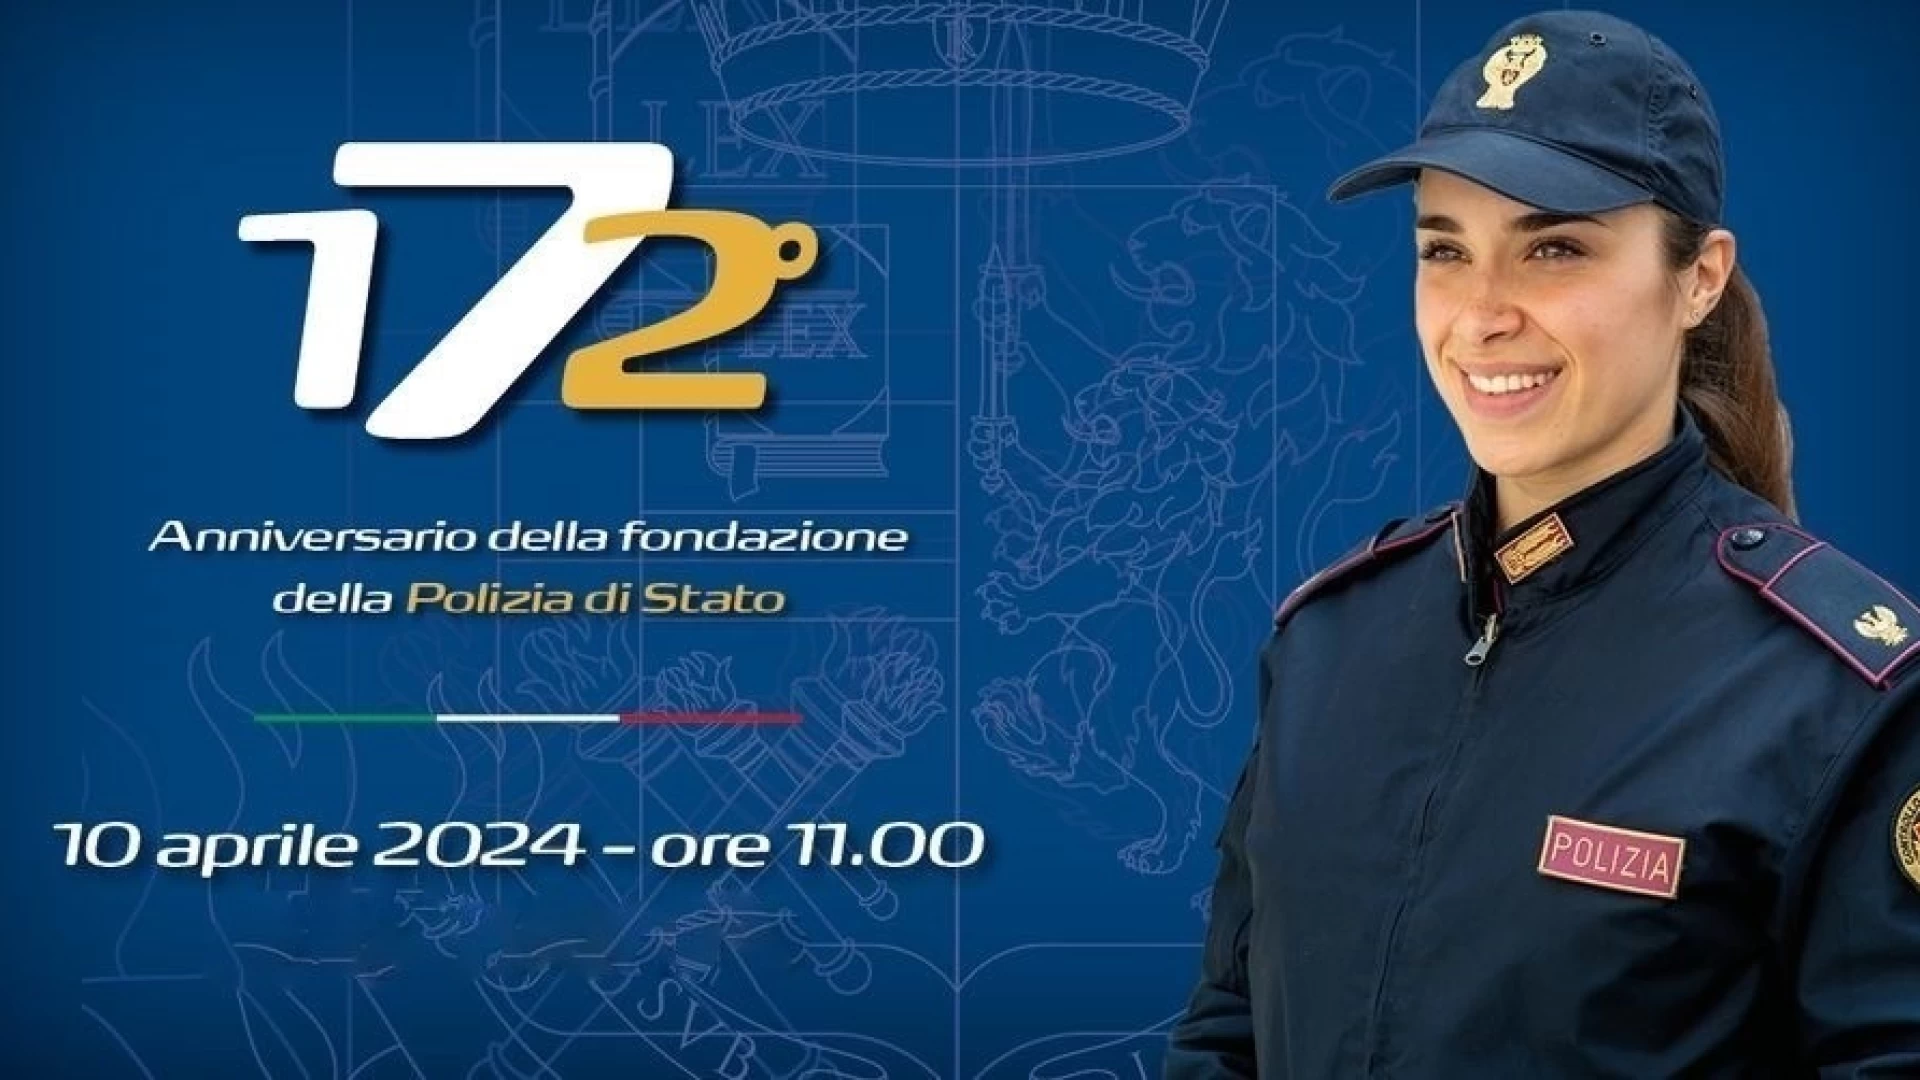 La Polizia di Stato celebra il 172esimo anniversario della Fondazione.